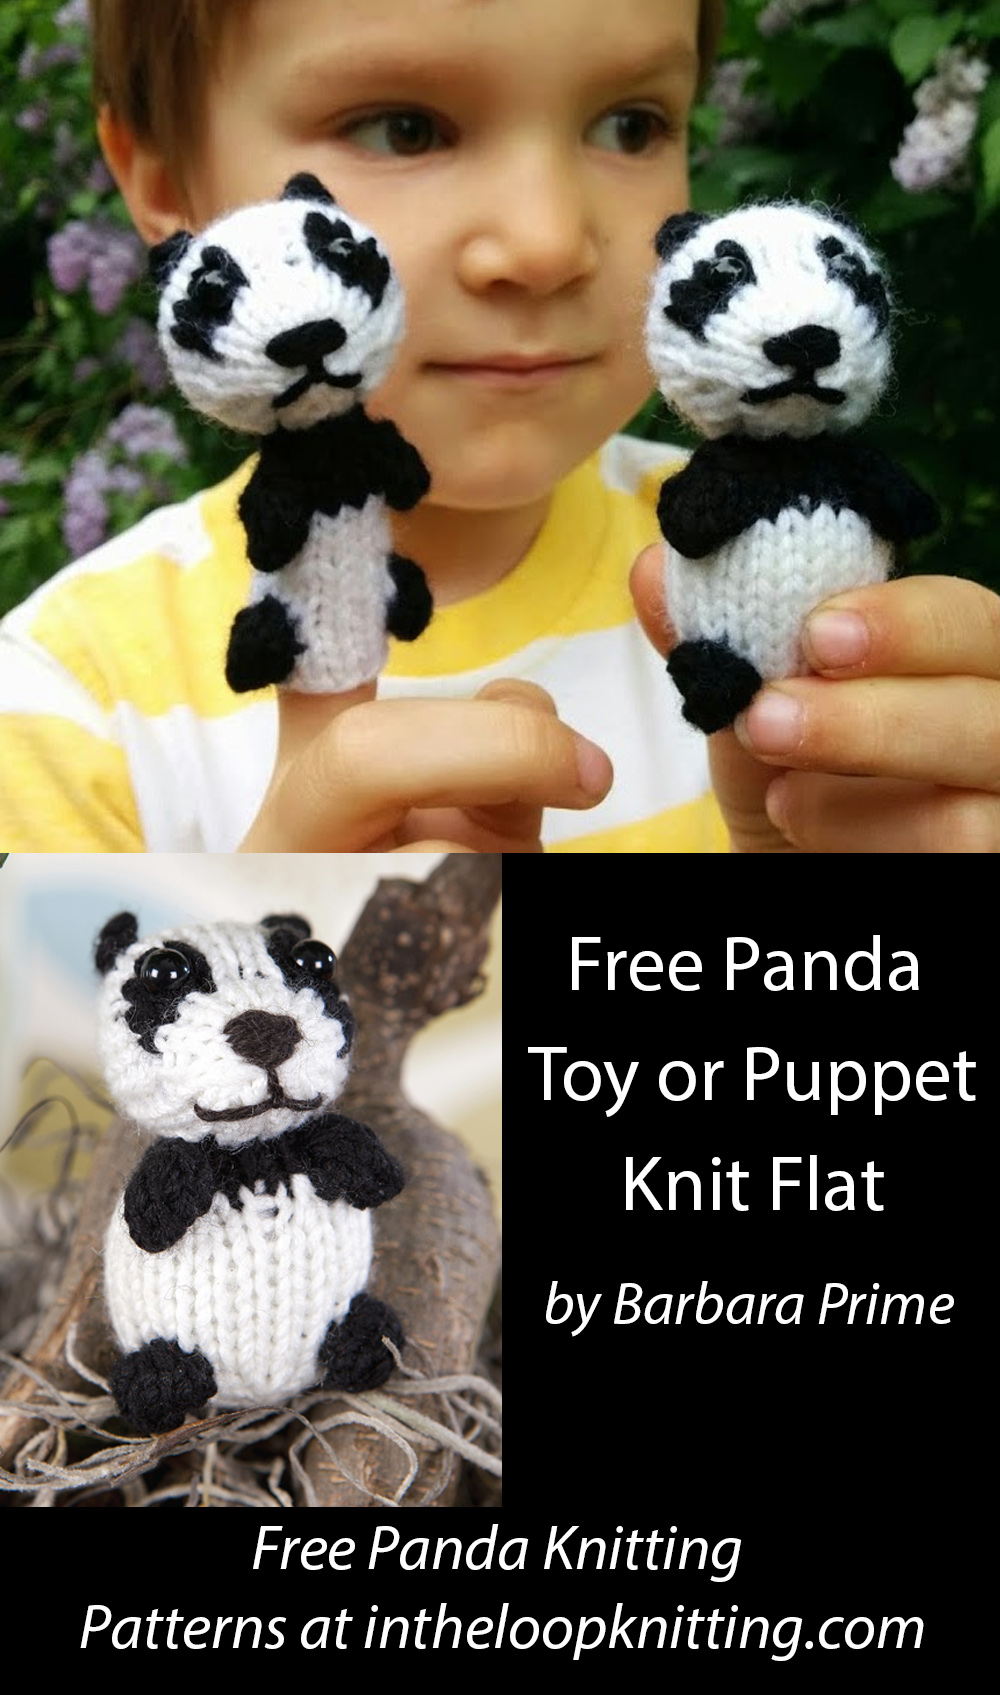 Free Panda Knitting Pattern Wee Panda by Barbara Prime